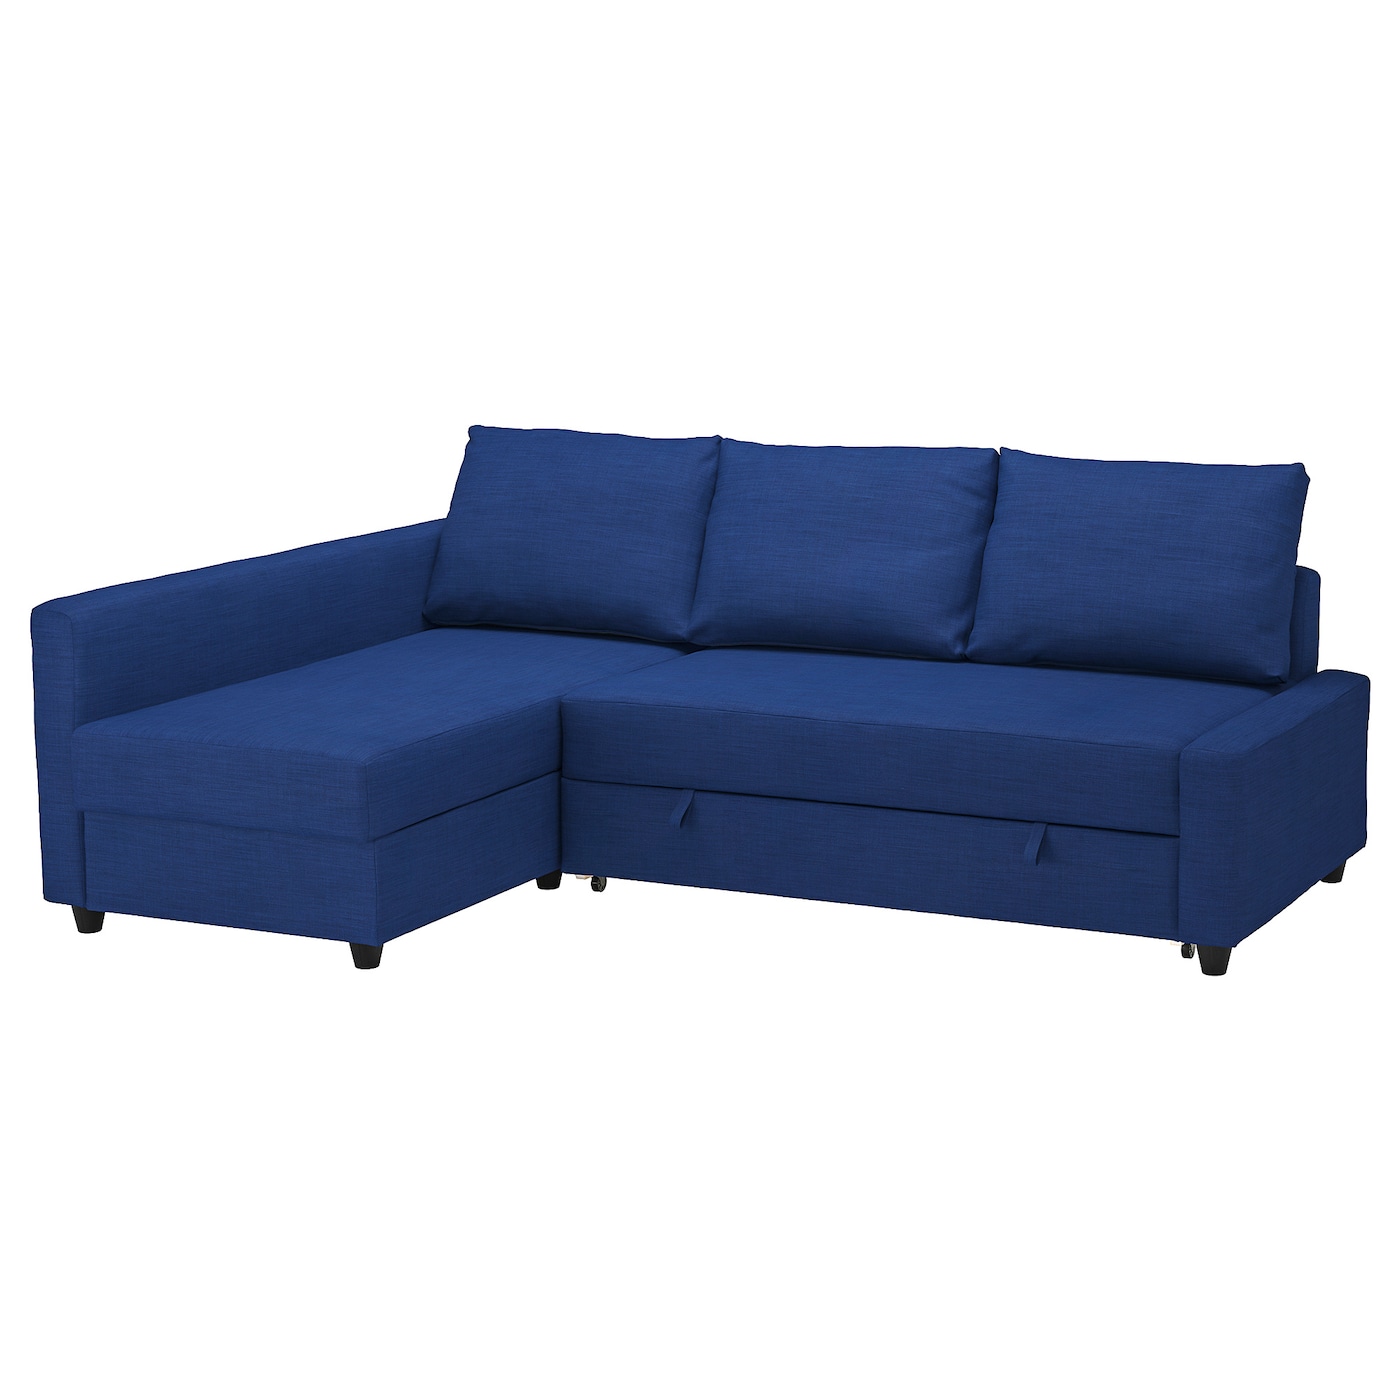 ФРИХЕТЕН Угловой диван-кровать + место для хранения, Скифтебо синий FRIHETEN IKEA диван кровать ramart design йорк премиум дк3 juno ash